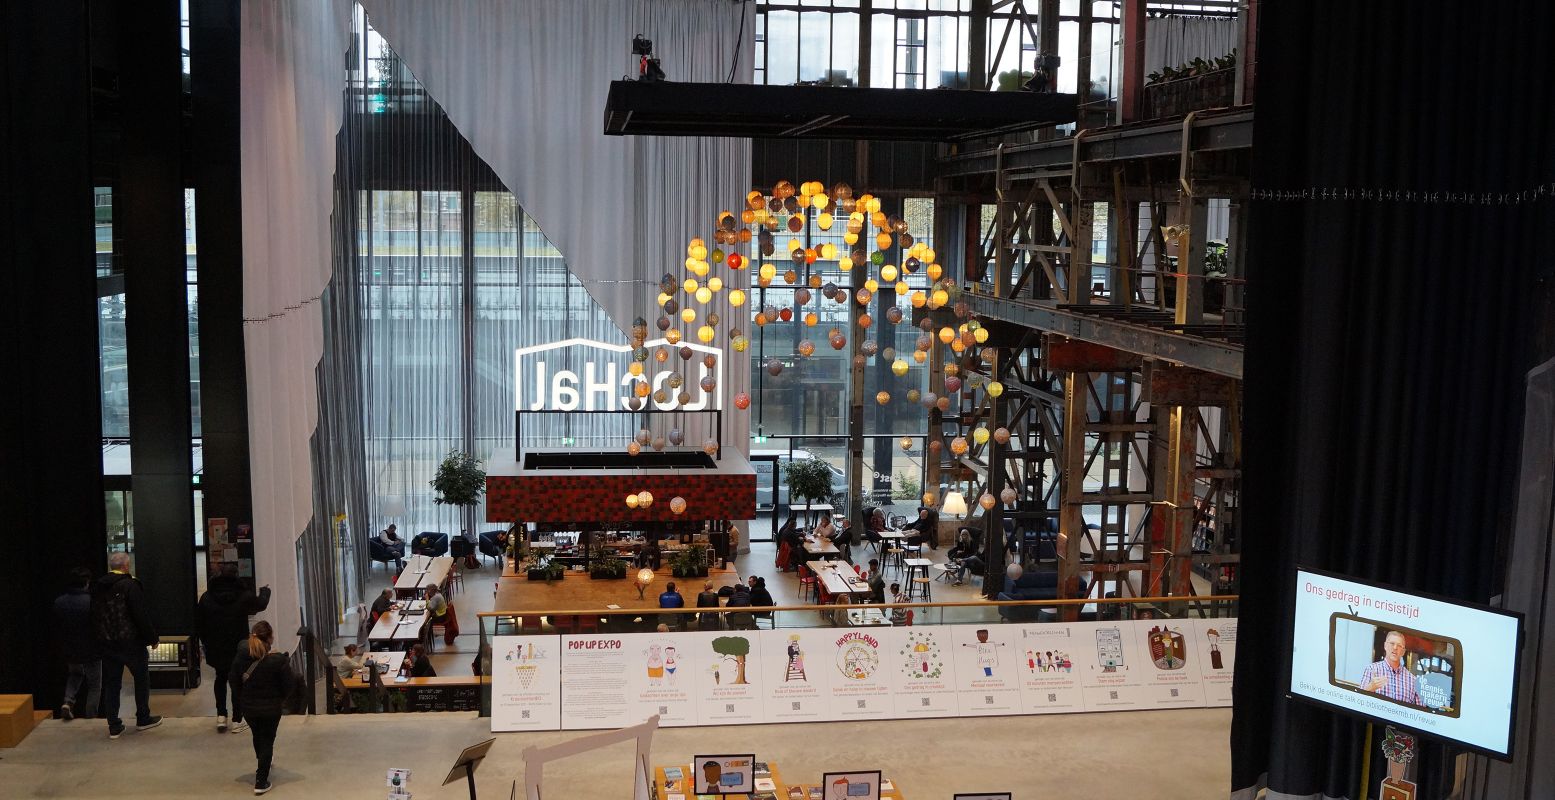 De enorme gordijnen die de LocHal verdelen in verschillende ruimtes zijn gemaakt in het Textielmuseum. Foto: DagjeWeg.NL